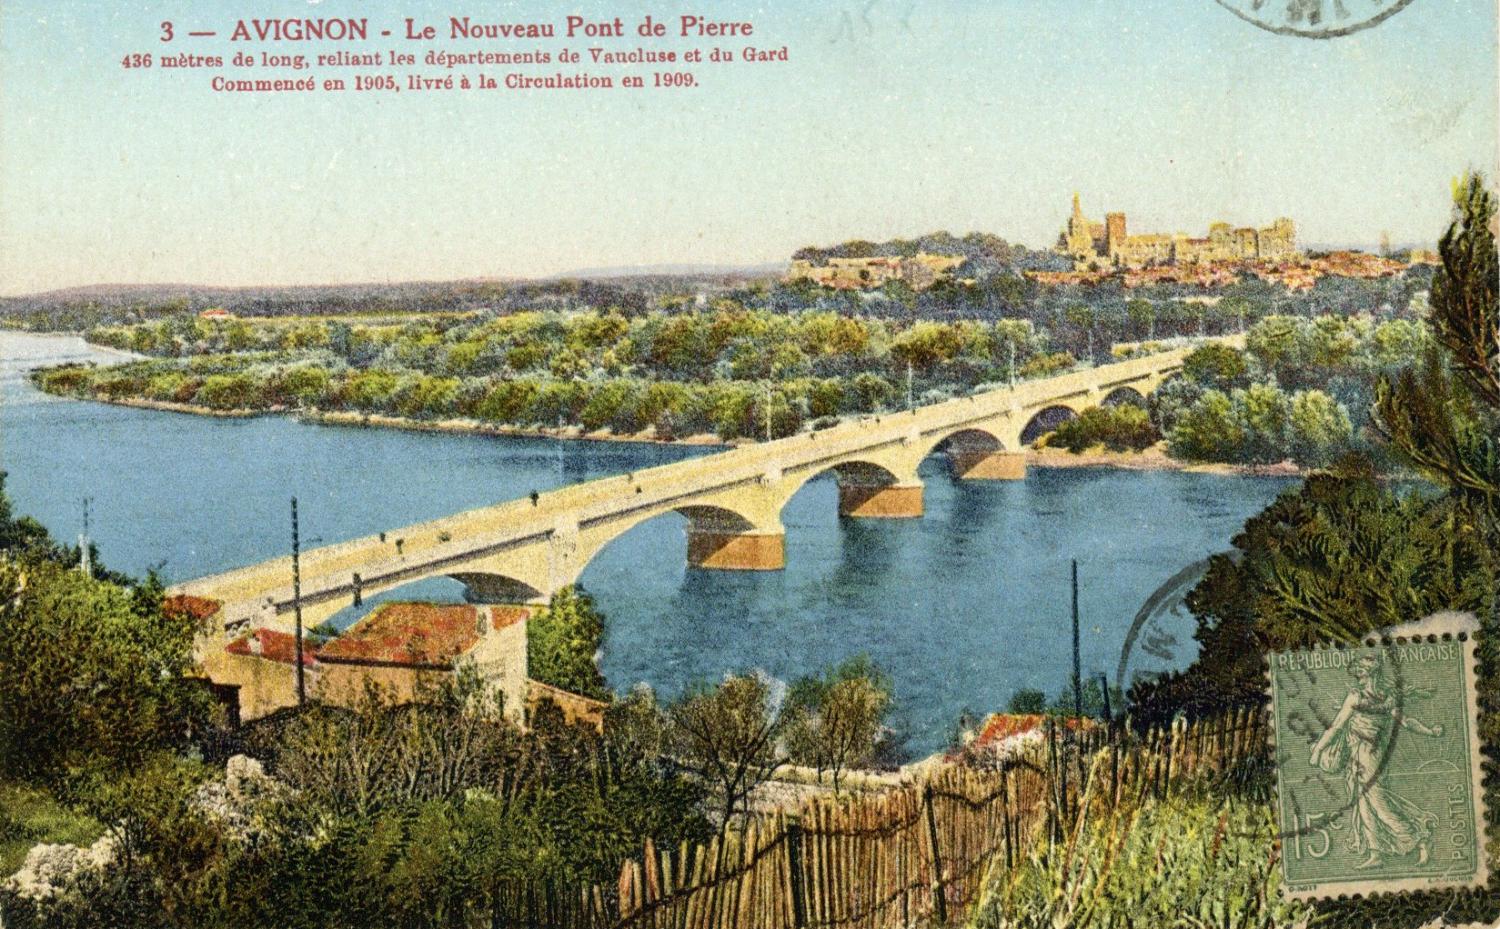 Avignon - Le Nouveau Pont de Pierre.